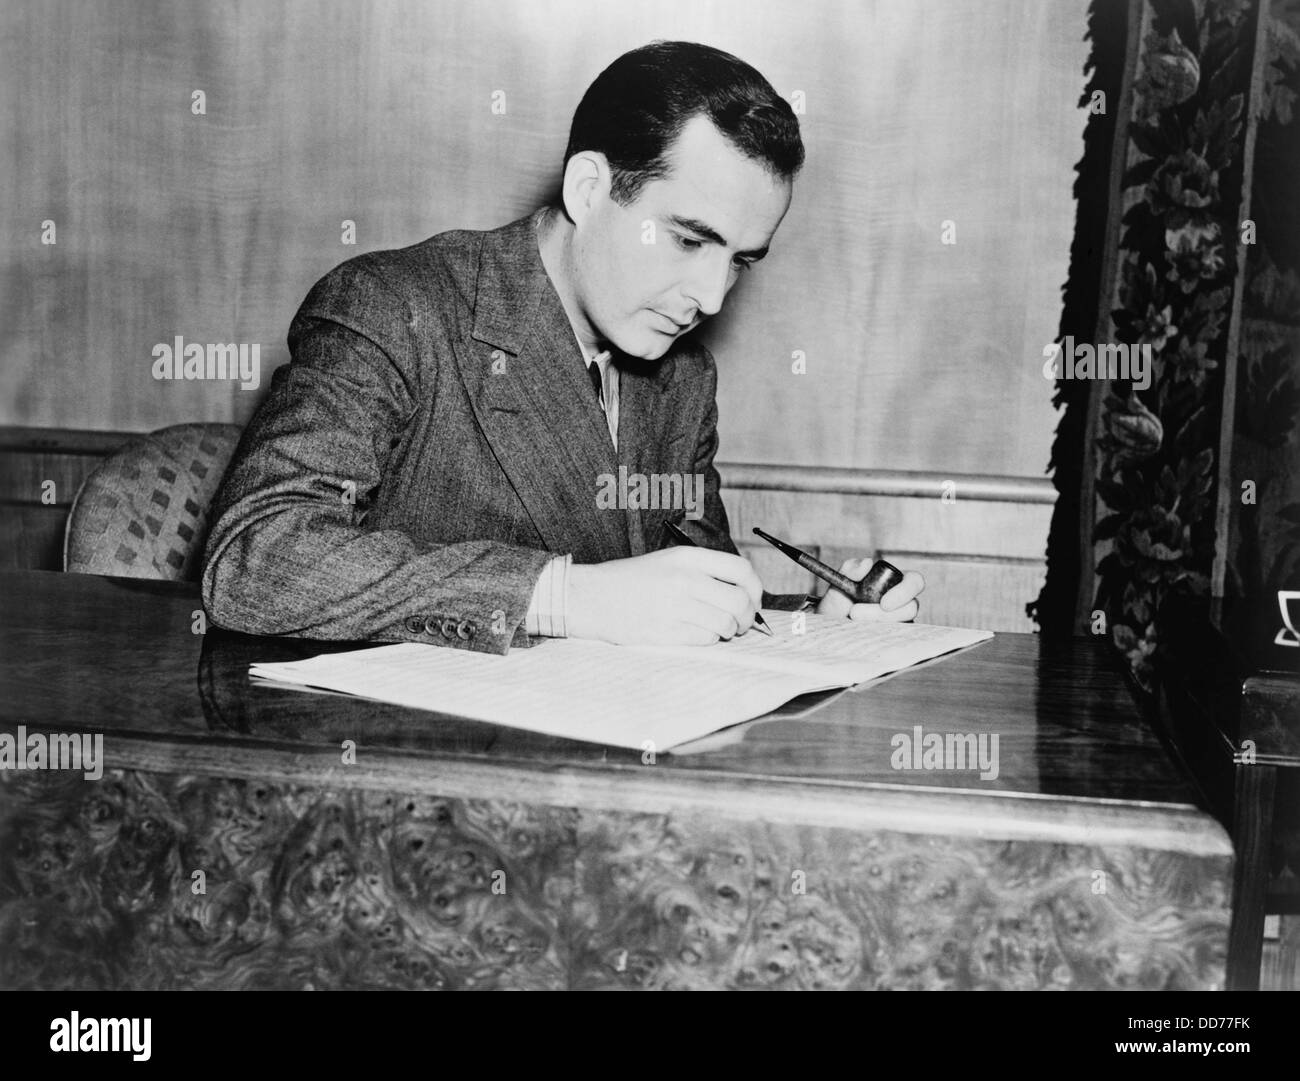 Samuel Barber, compositore americano di musica orchestrale, opera, corale e musica di pianoforte. Oct 26, 1938. (BSLOC 2013 9 15) Foto Stock